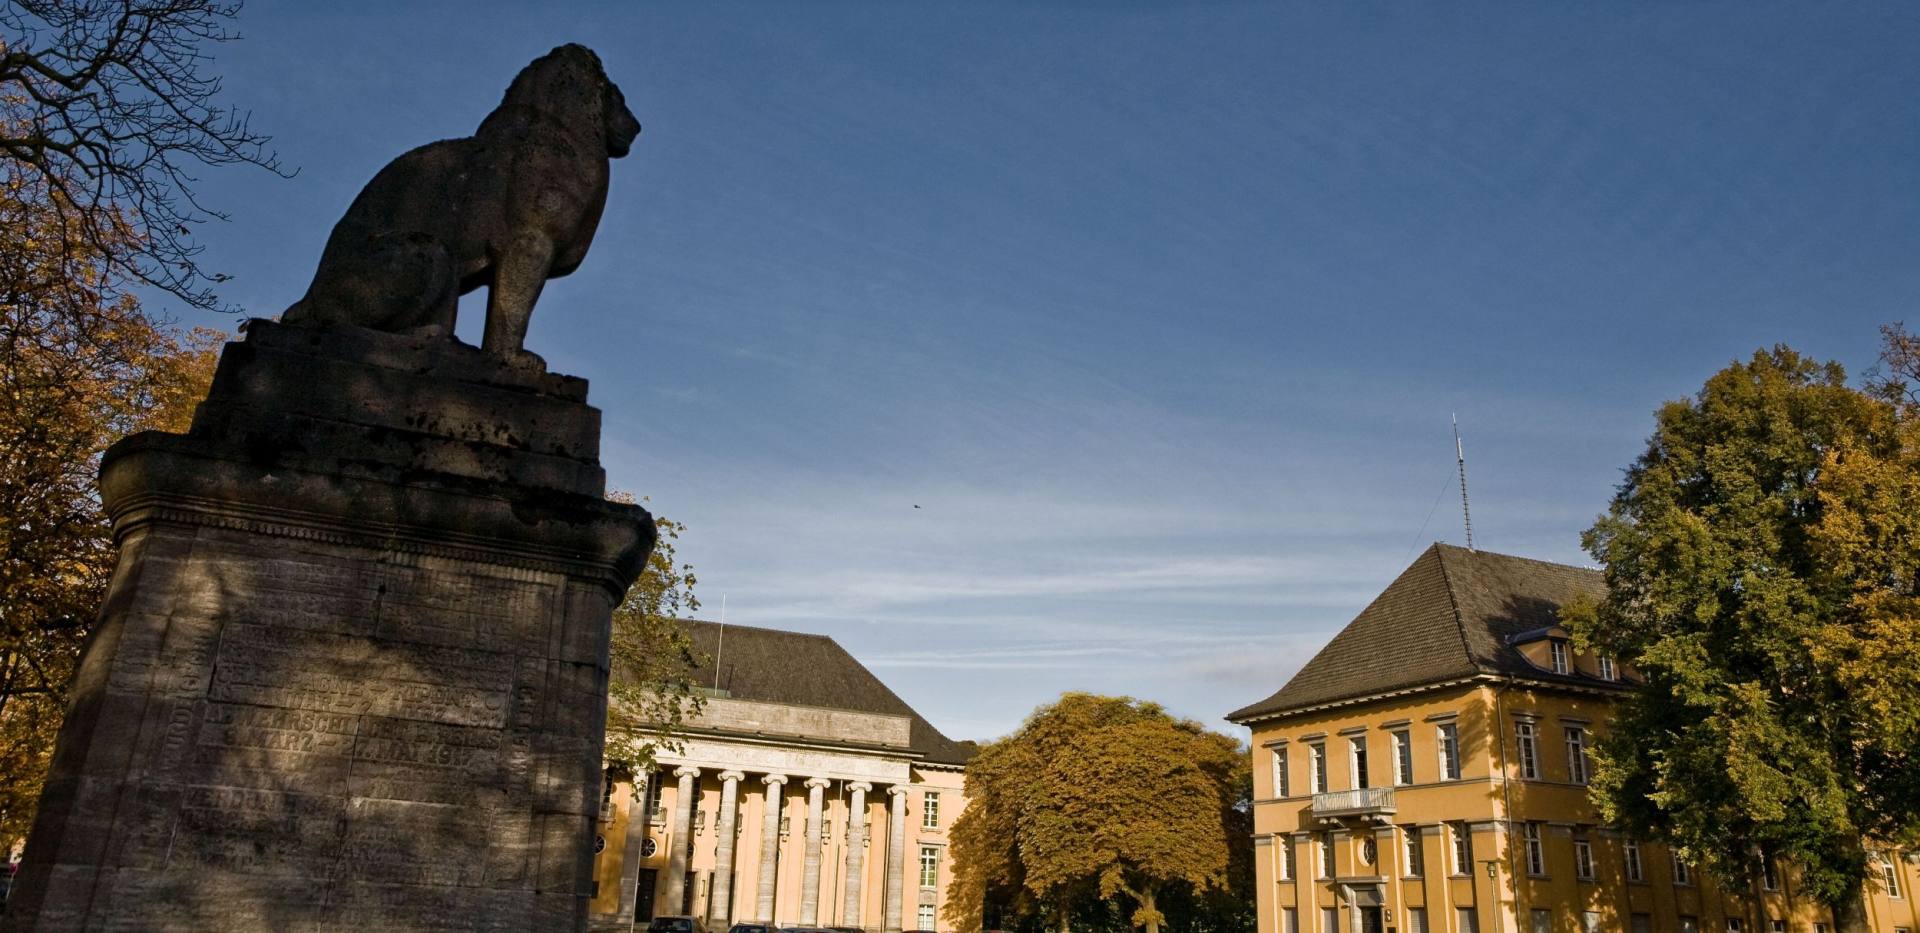 Blick auf das Gebäude "Alter Landtag" mit Löwenstatue im Vordergrund.